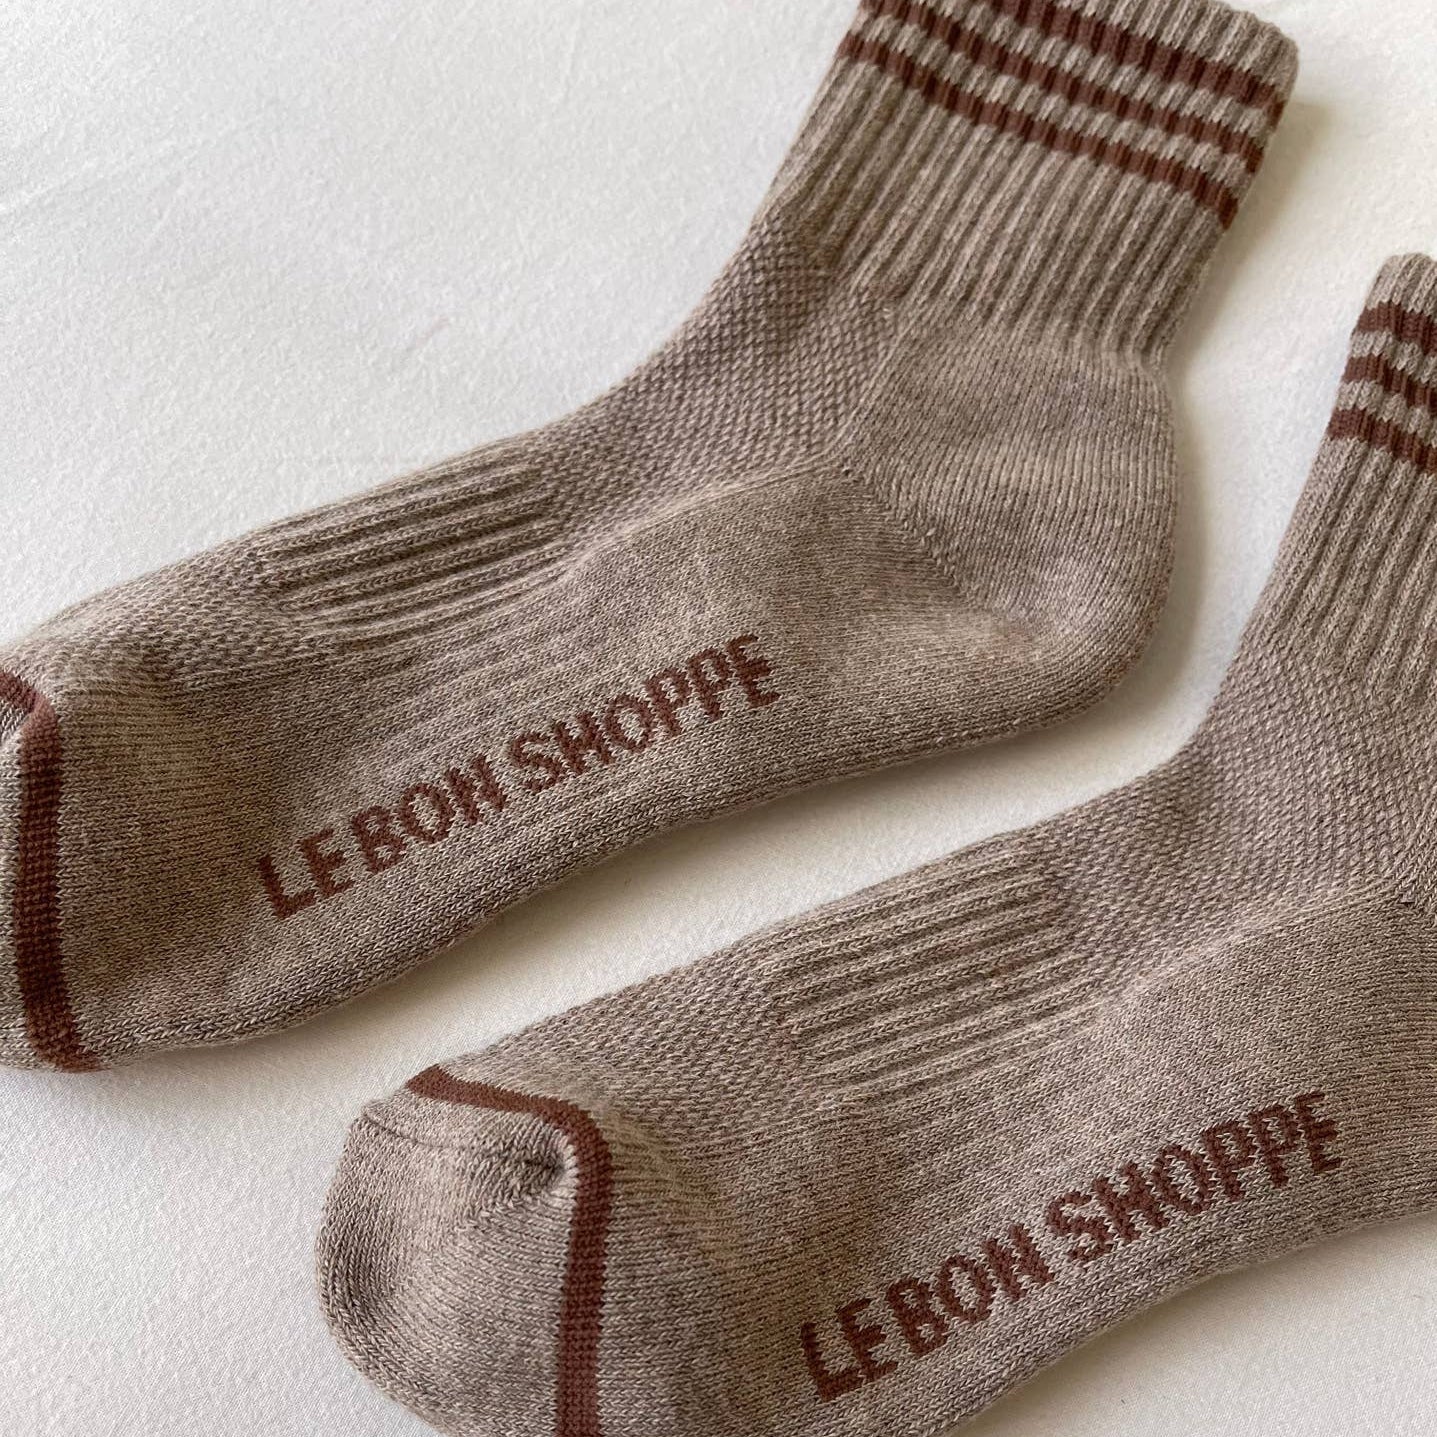 Vintage Style Socks